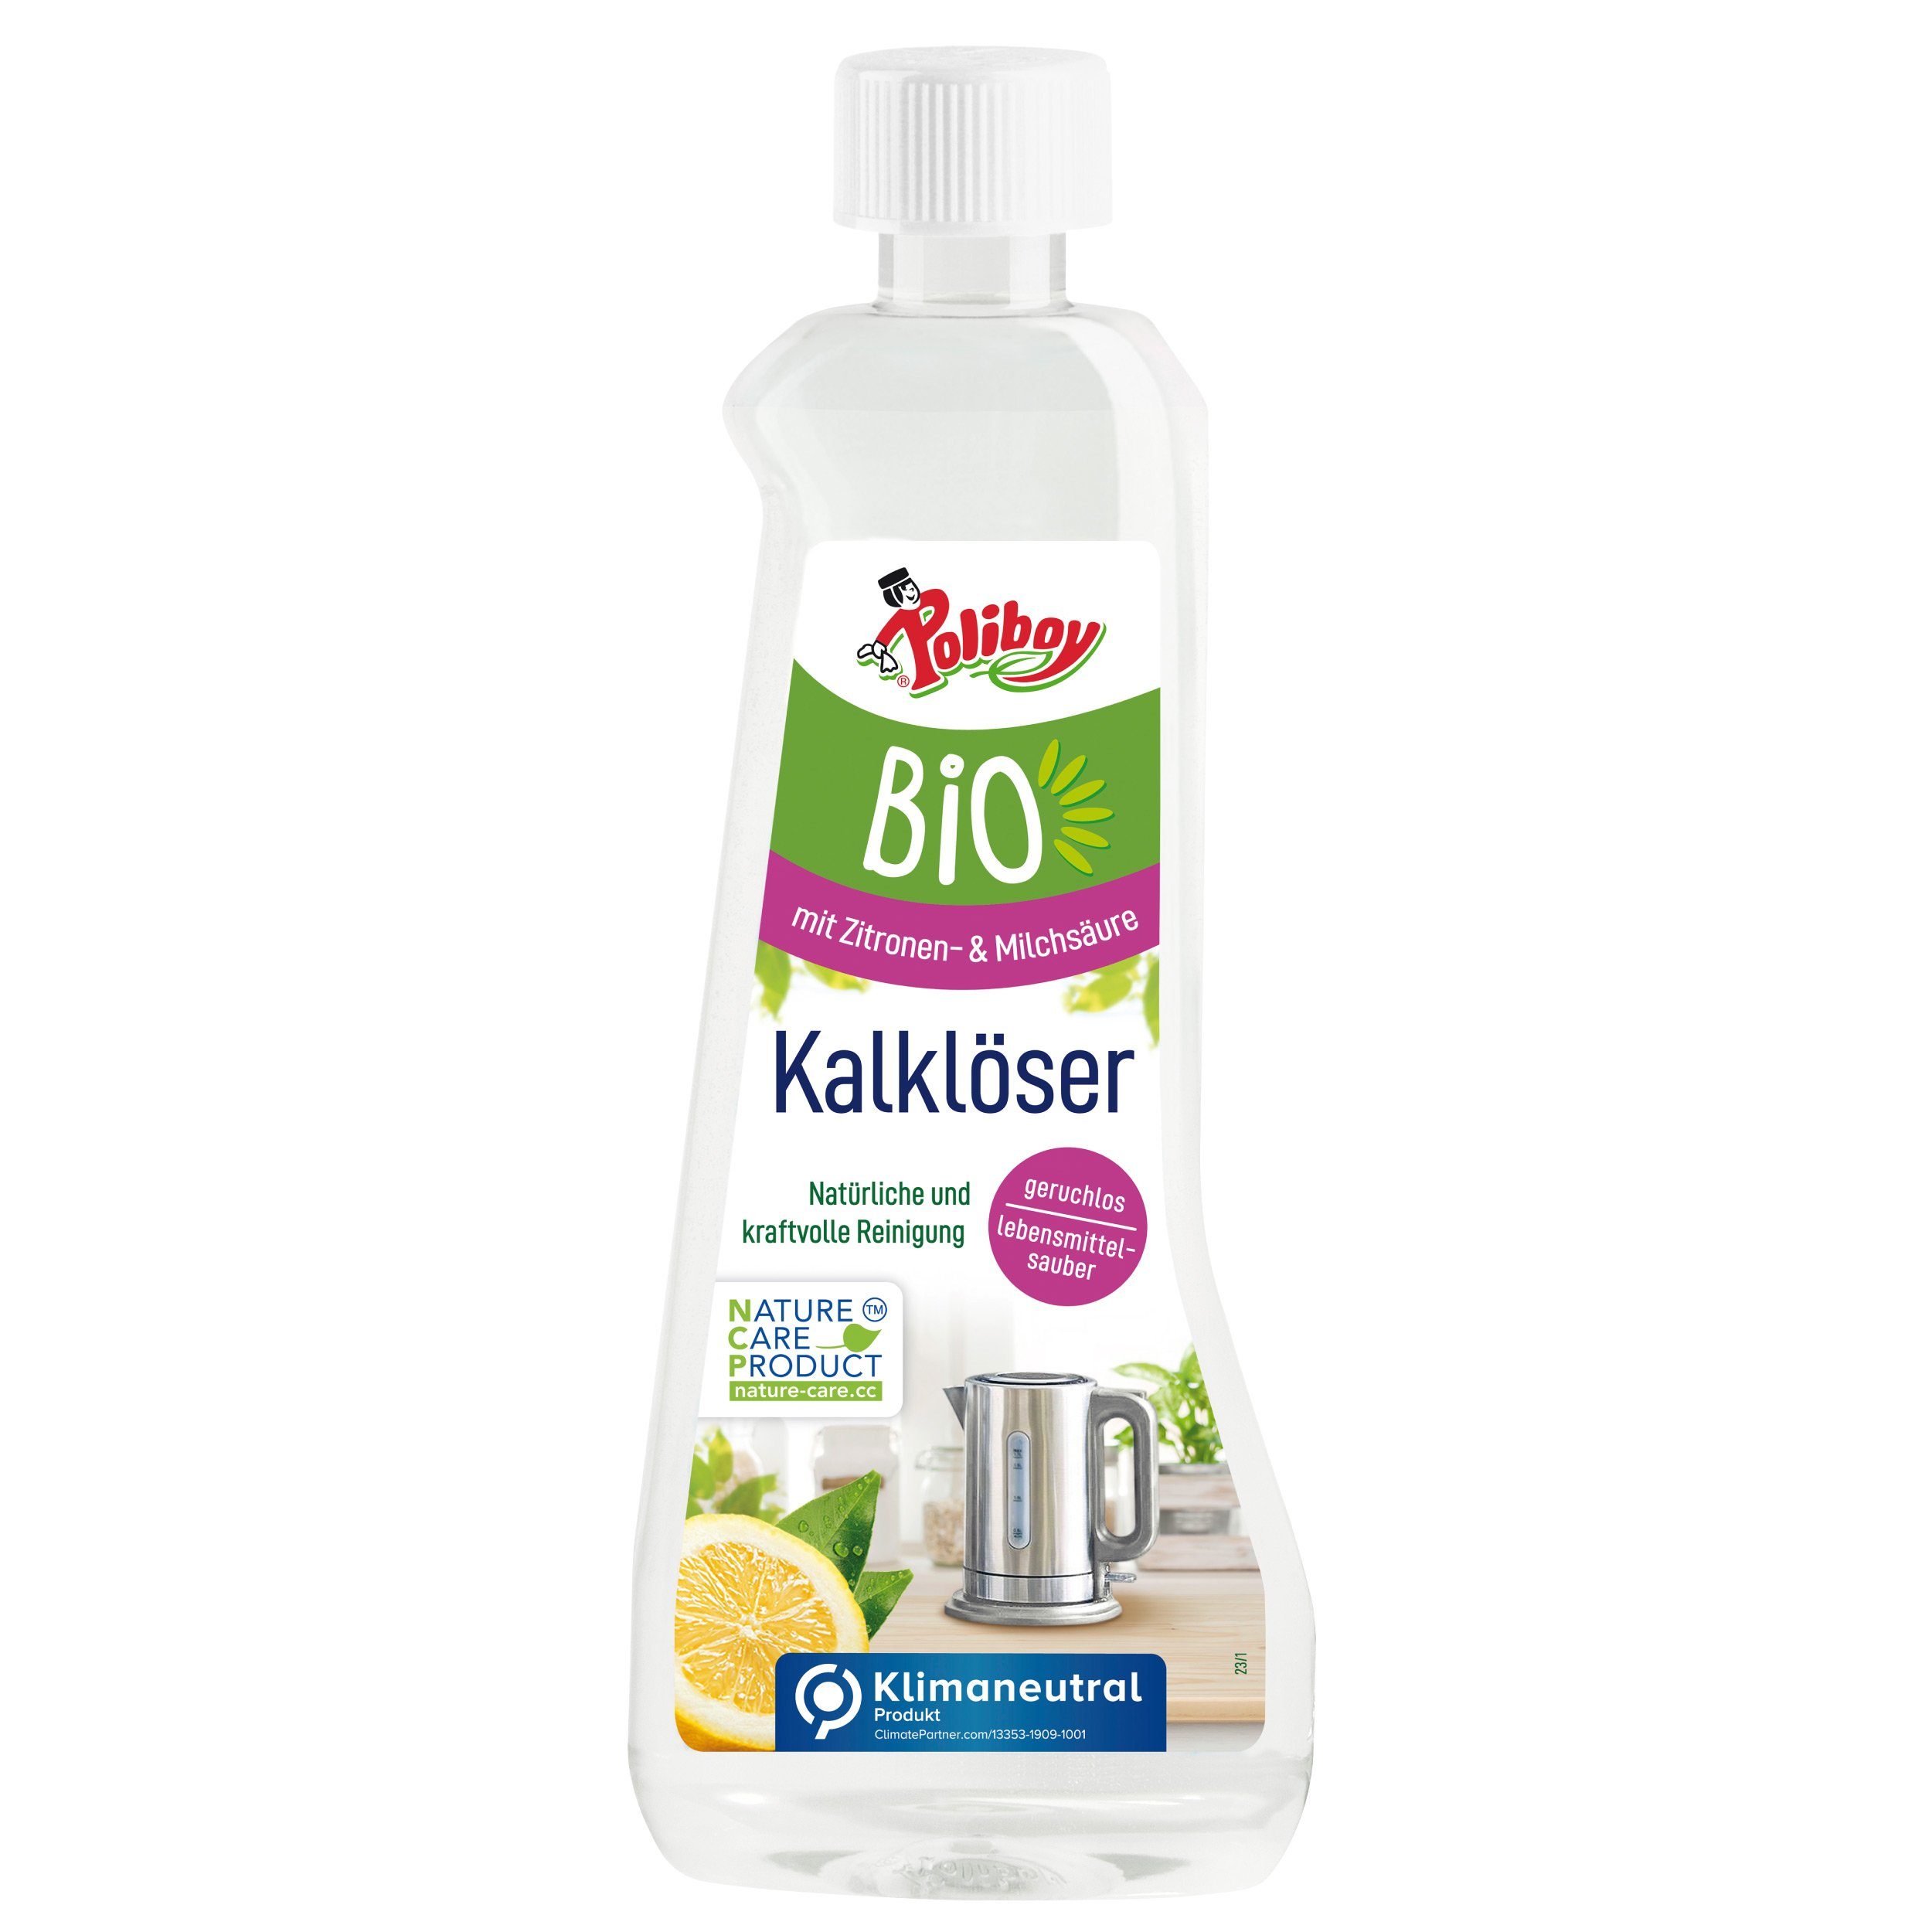 poliboy - 500 ml - Bio Kalklöser (für ein hygienisches & natürliches Entkalken - Made in Germany) | Entkalker